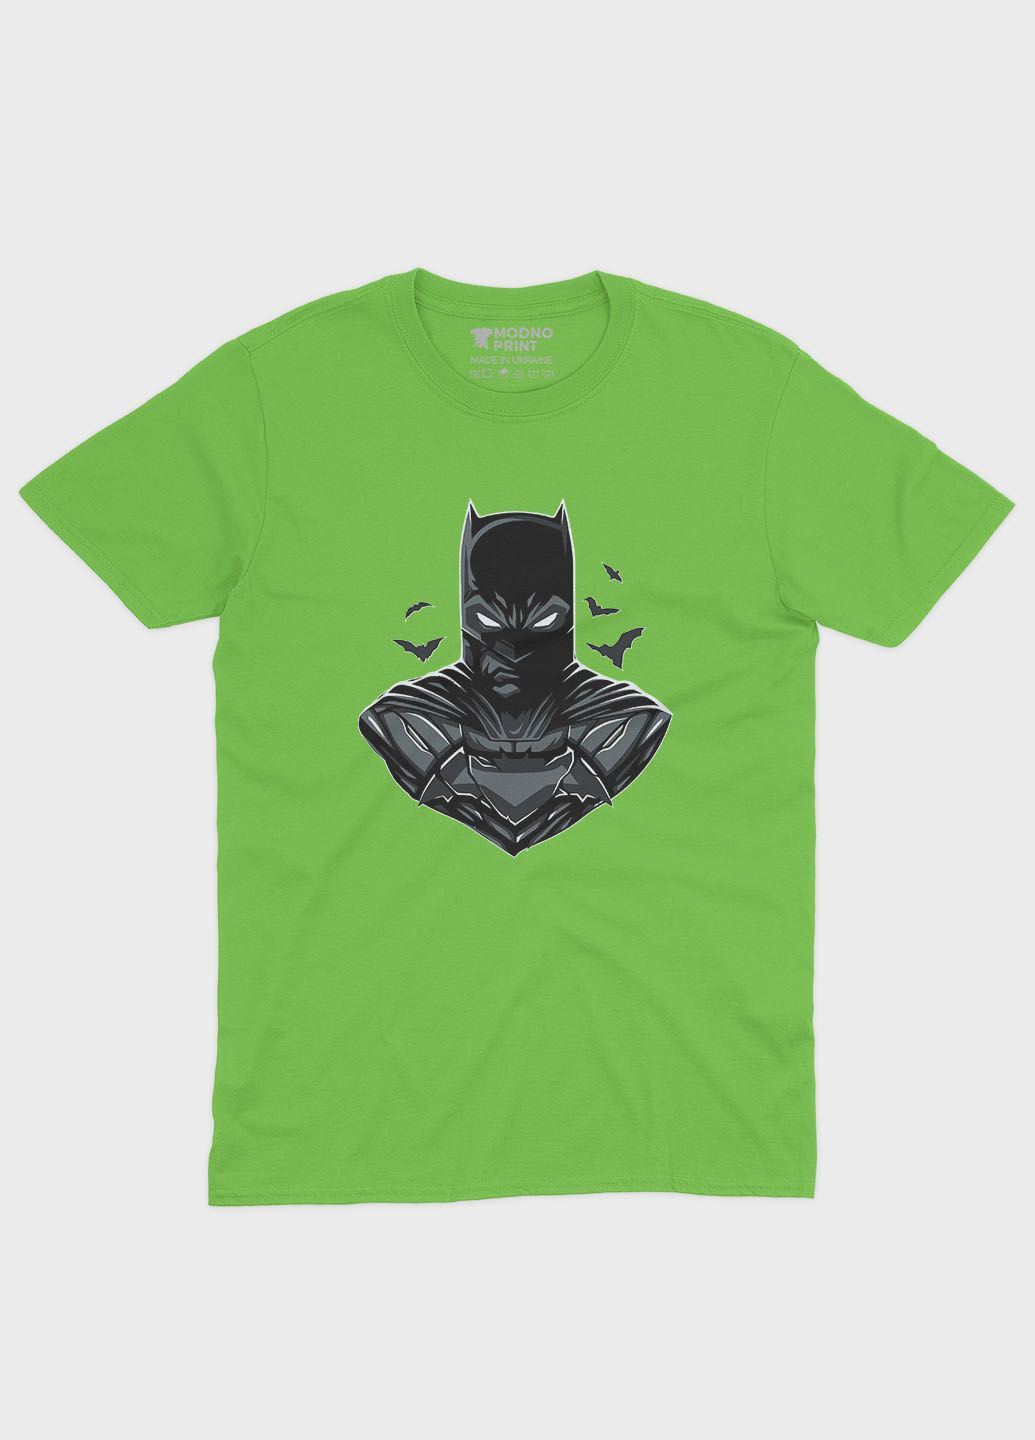 Салатовая демисезонная футболка для мальчика с принтом супергероя - бэтмен (ts001-1-kiw-006-003-026-b) Modno